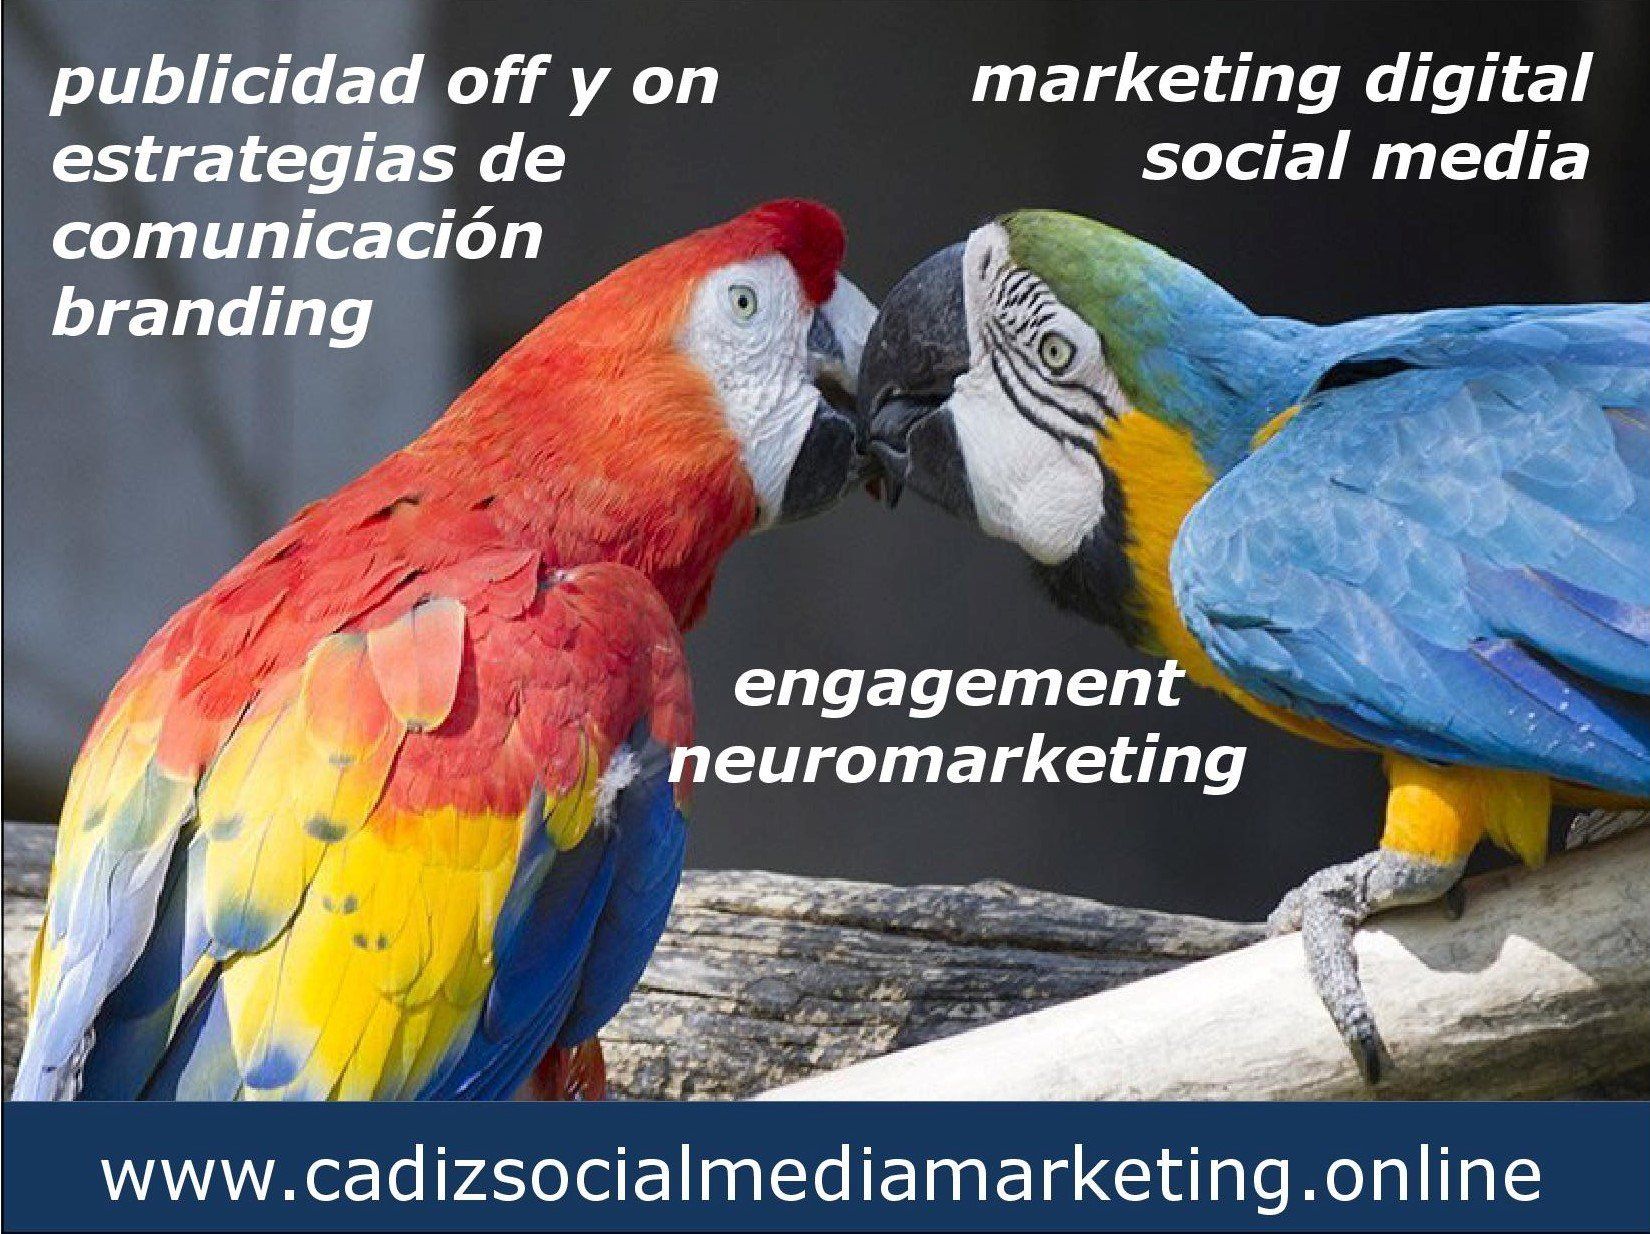 Marketing Digital. Social Media. Comunicación. Publicidad.